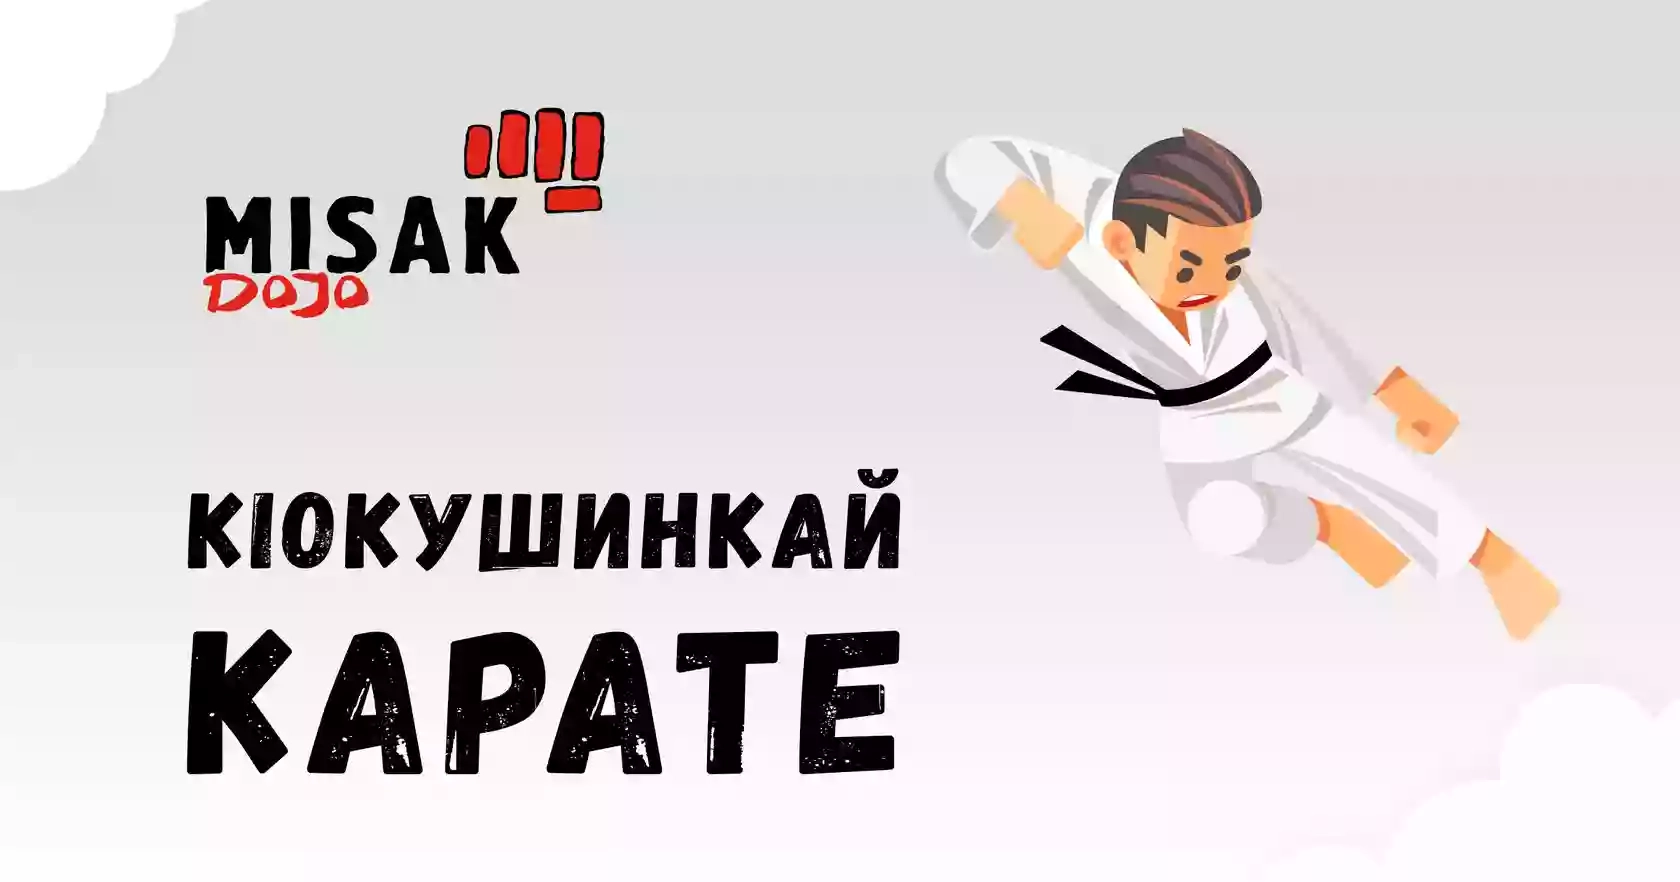 "Misakdojo" - Karate school